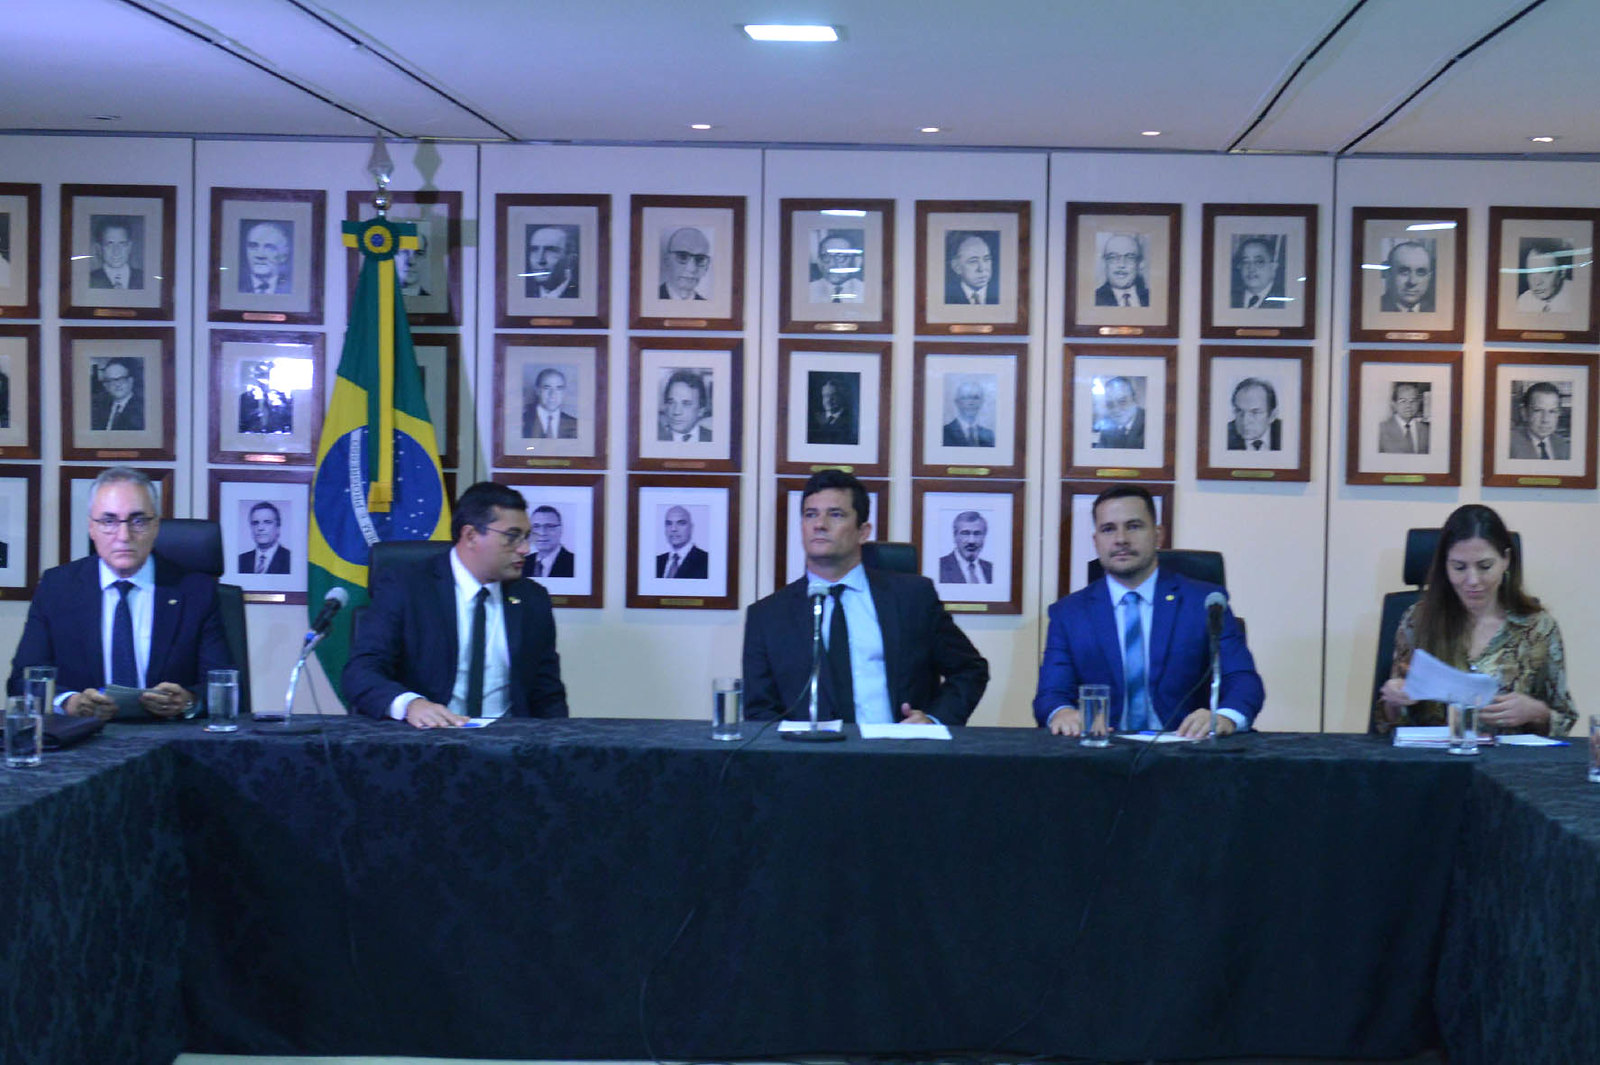 Ministro Sérgio Moro em solenidade recente no MJSP, ao seu lado direito o deputado federal Alberto Neto